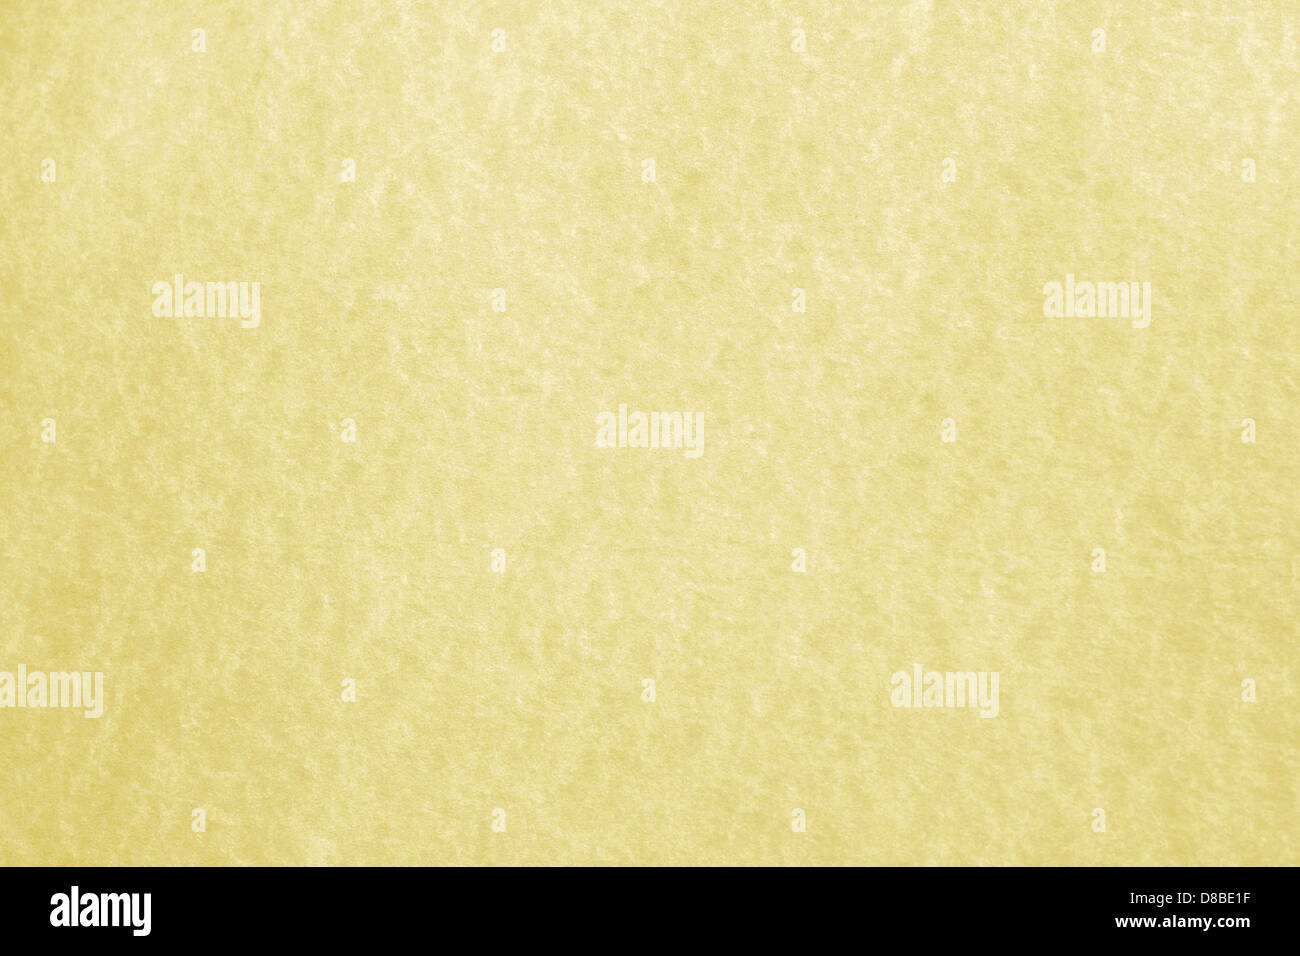 golden parchment paper texture. Stock Photo